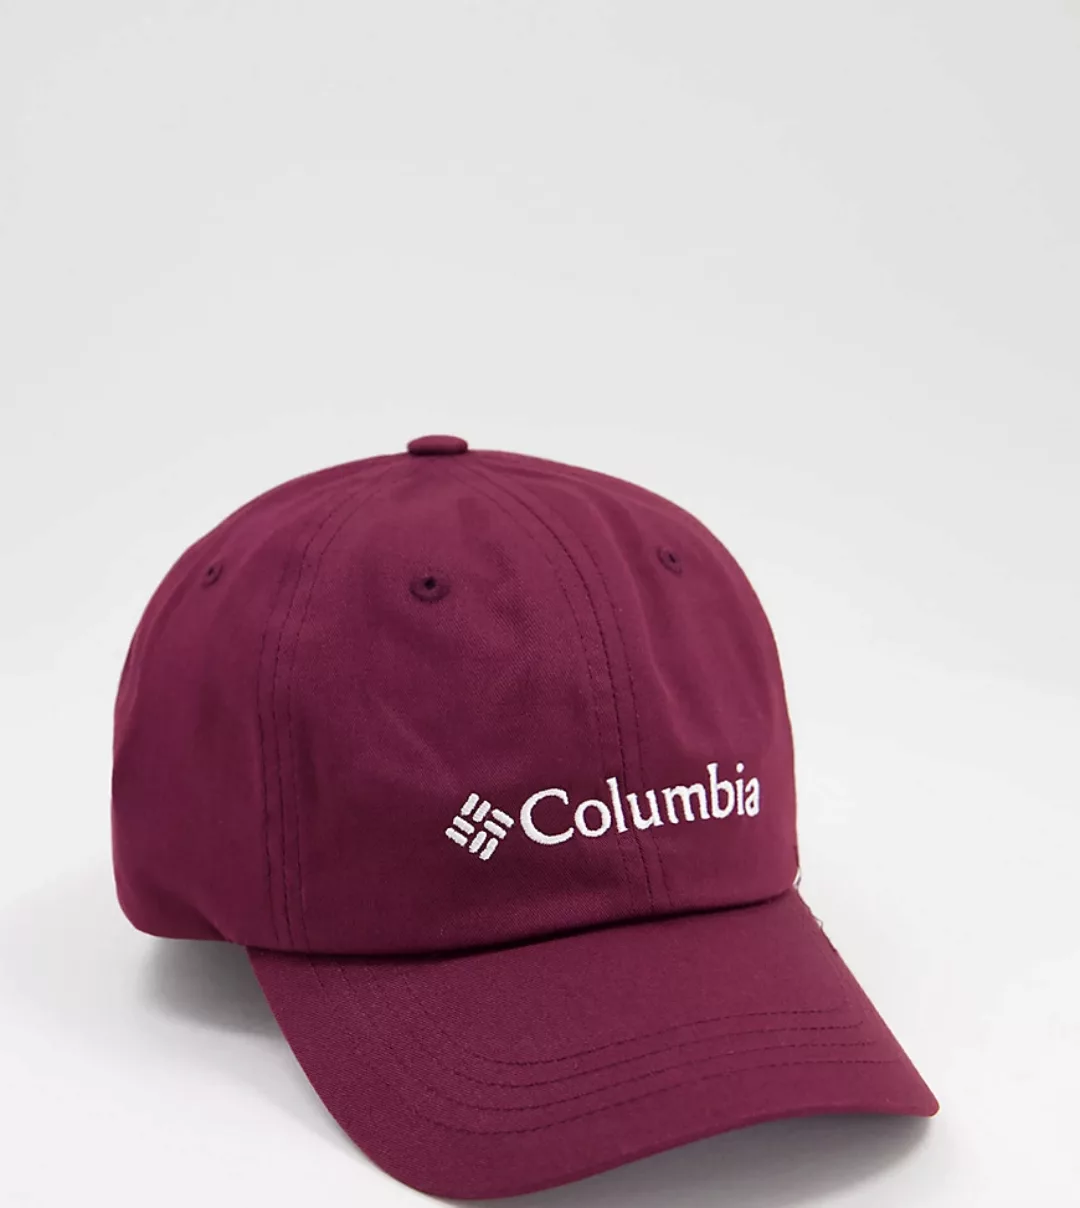 Columbia – ROC II – Kappe in Burgunderrot, exklusiv bei ASOS günstig online kaufen